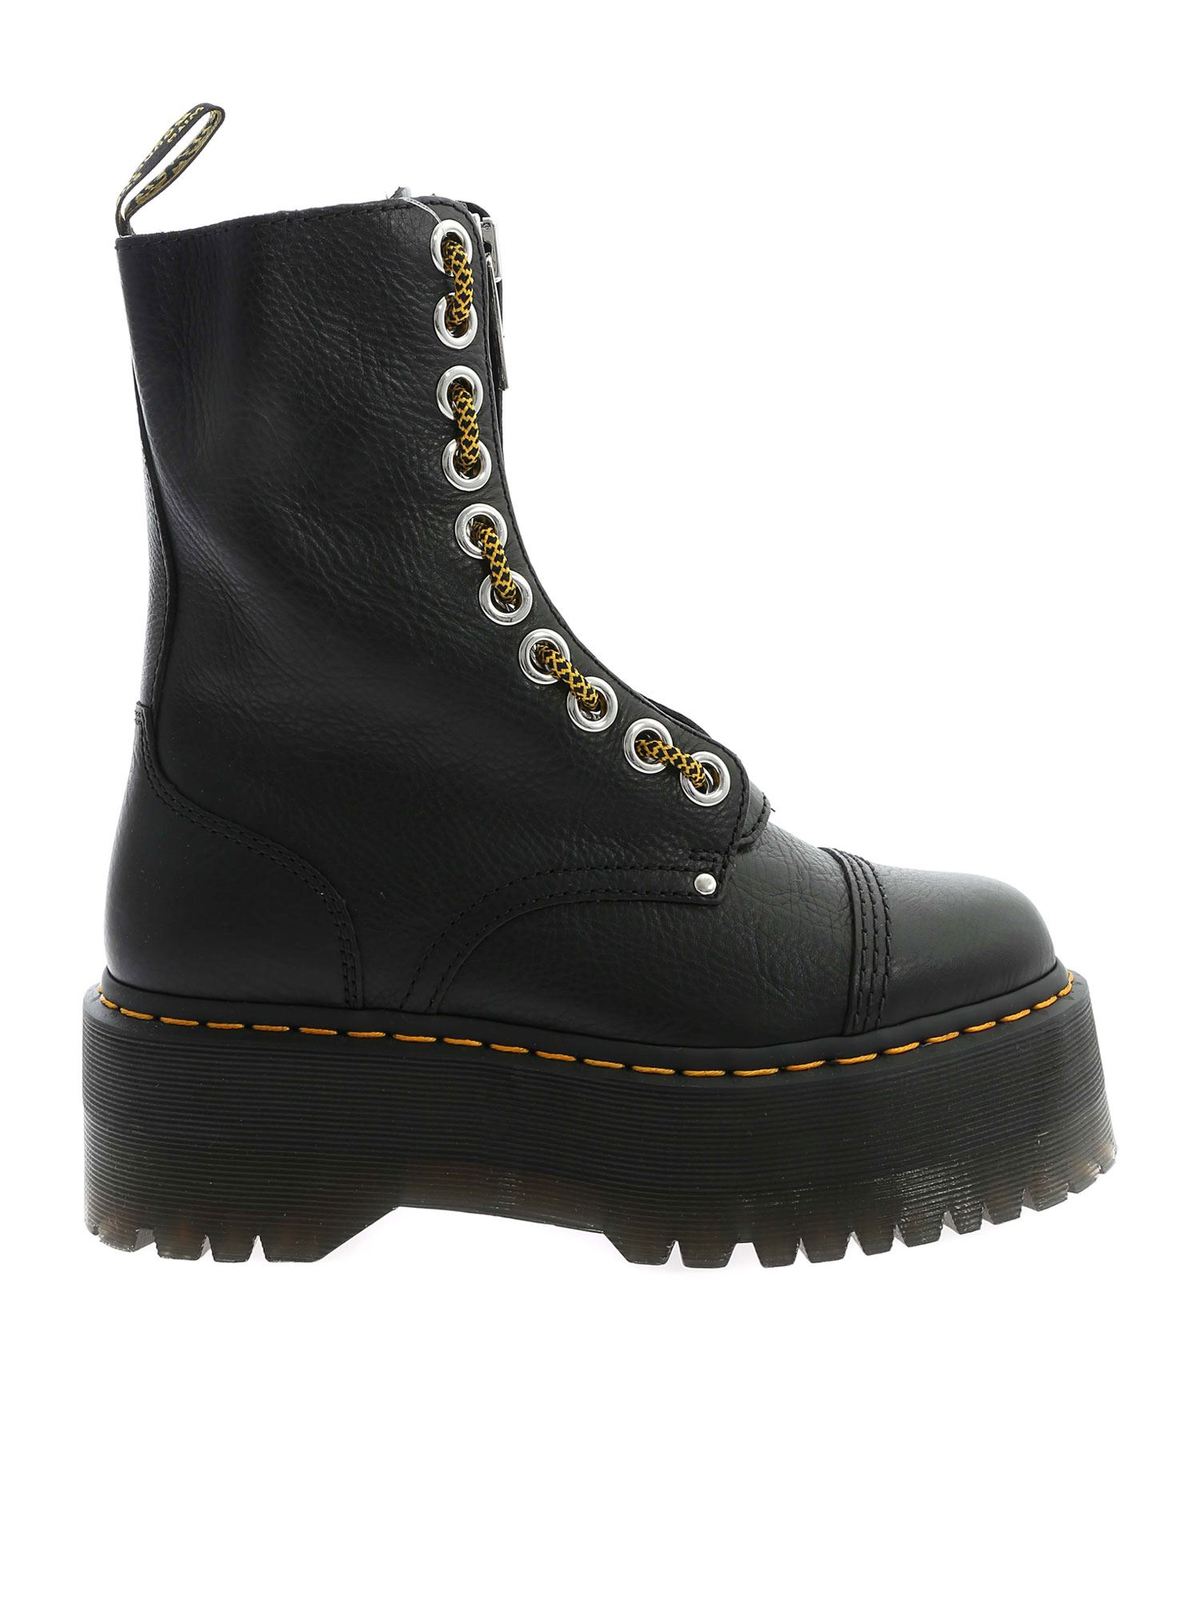 Boots Dr. Martens - Sinclair Hi Max boots in black - 26088001 | iKRIX.com